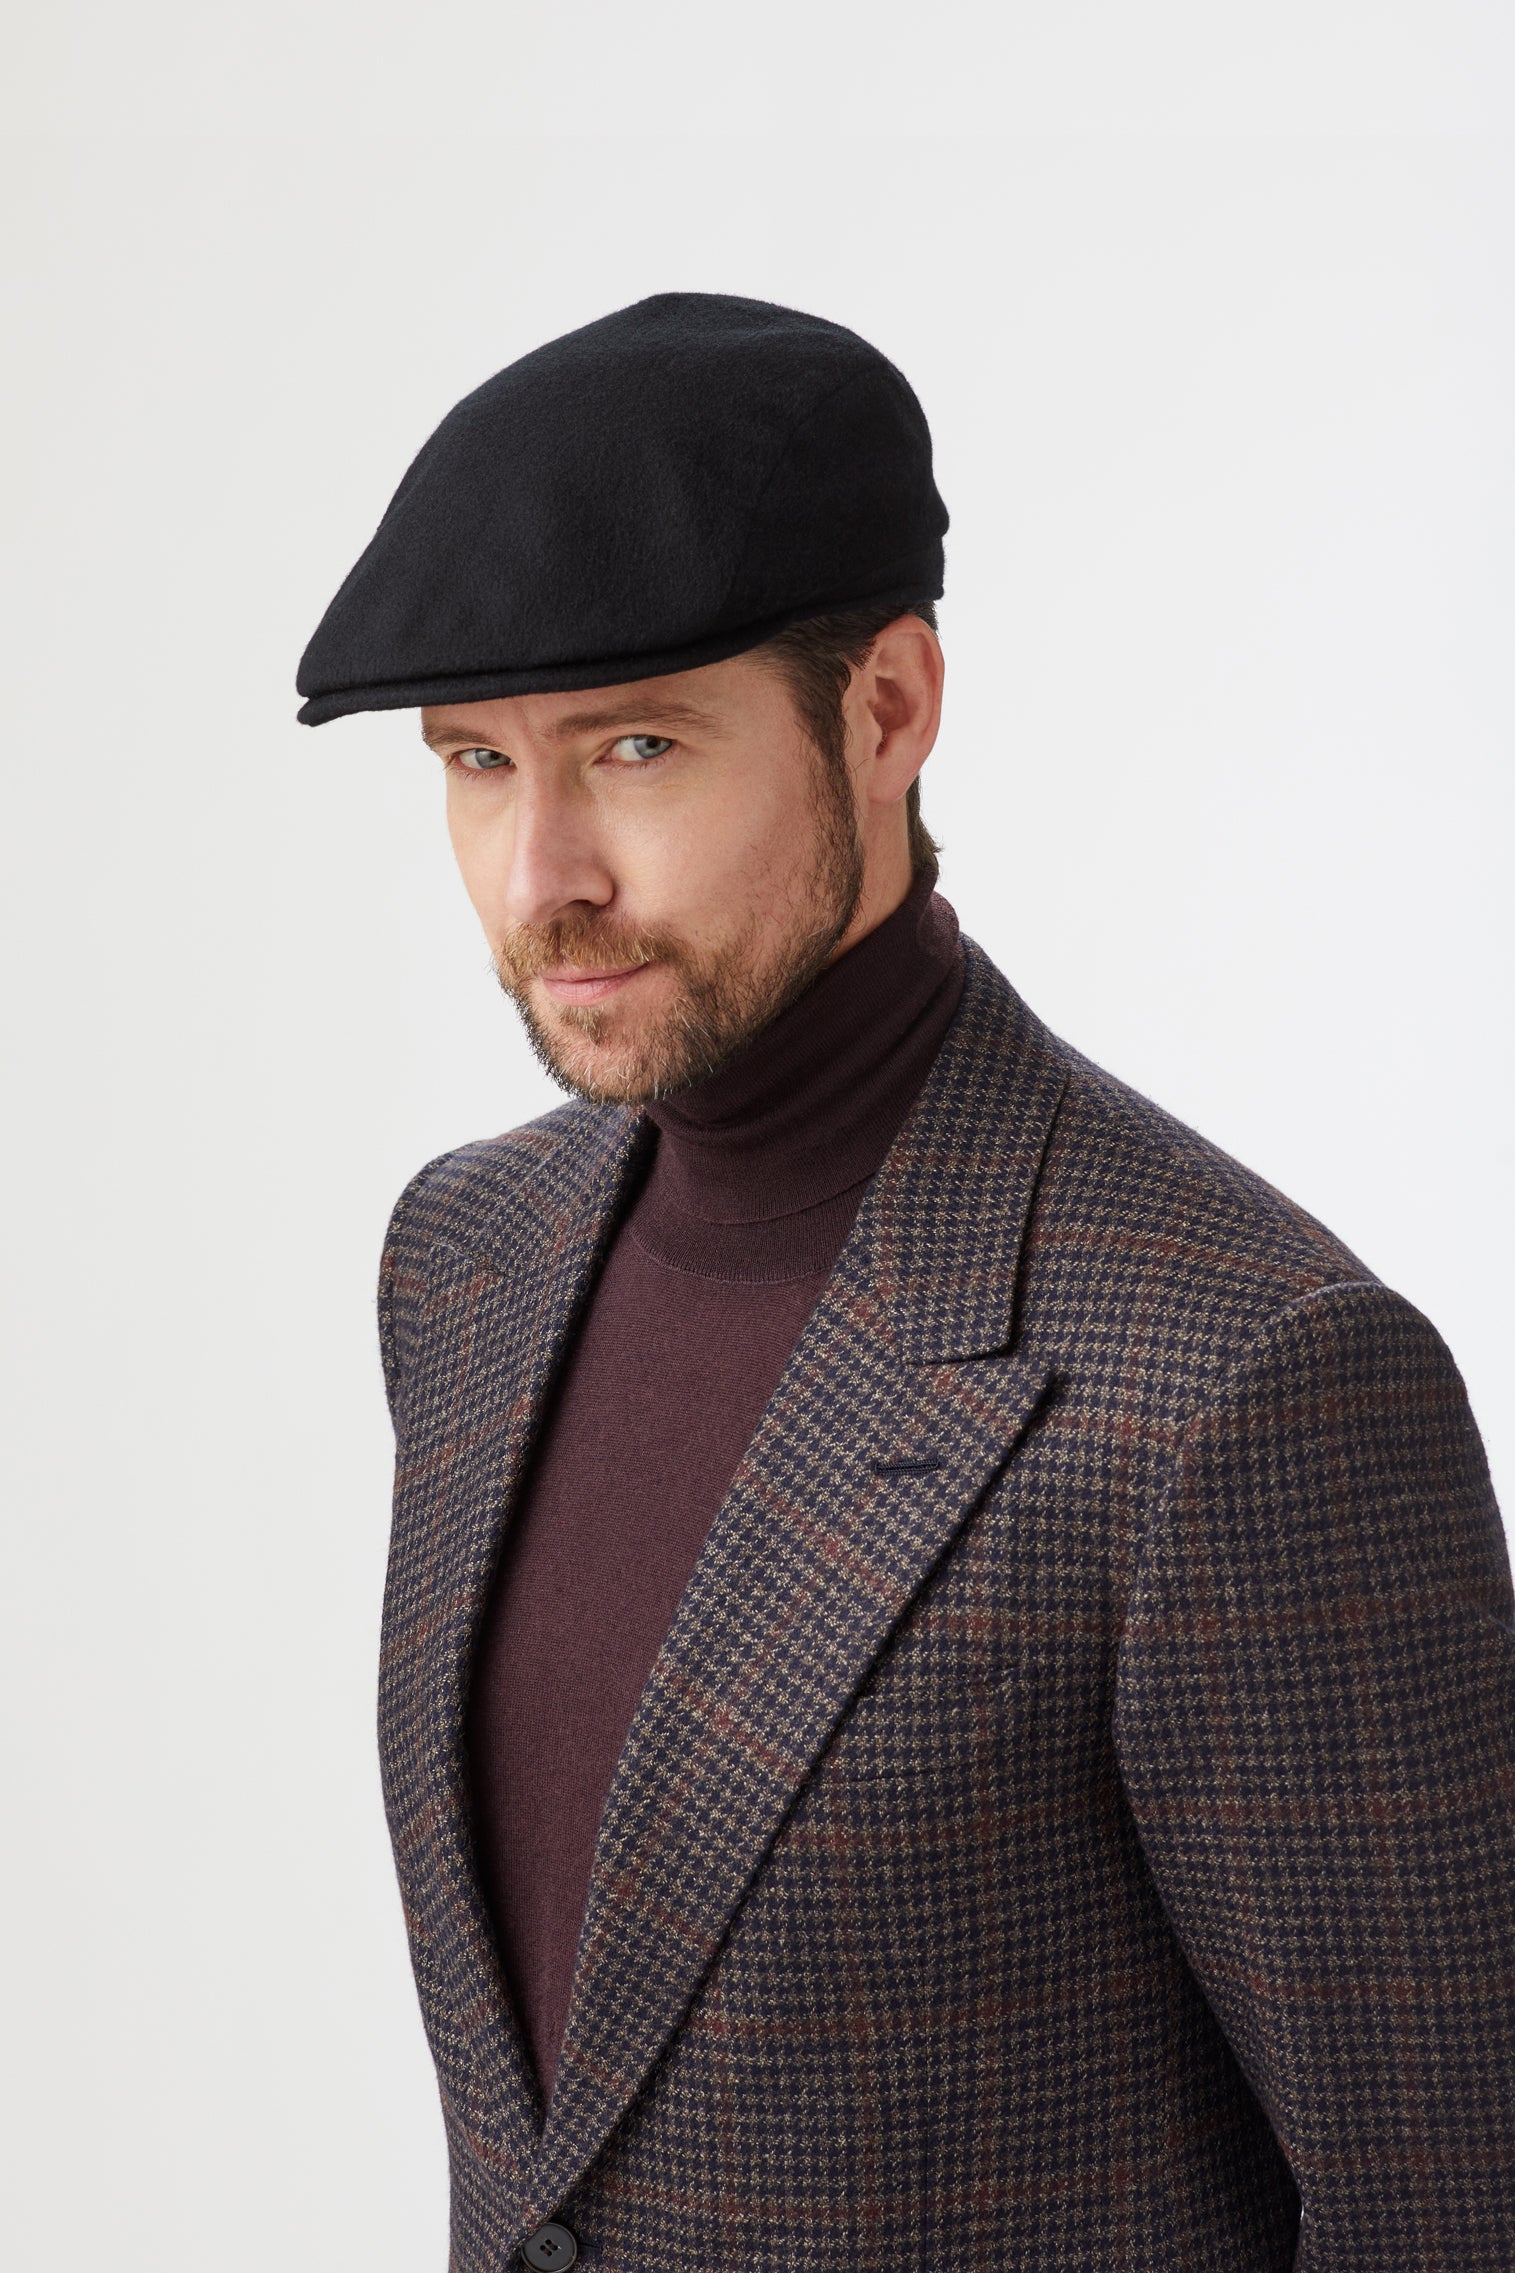 Escorial Wool Berkeley Flat Cap - All Ready to Wear - Lock & Co. Hatters London UK